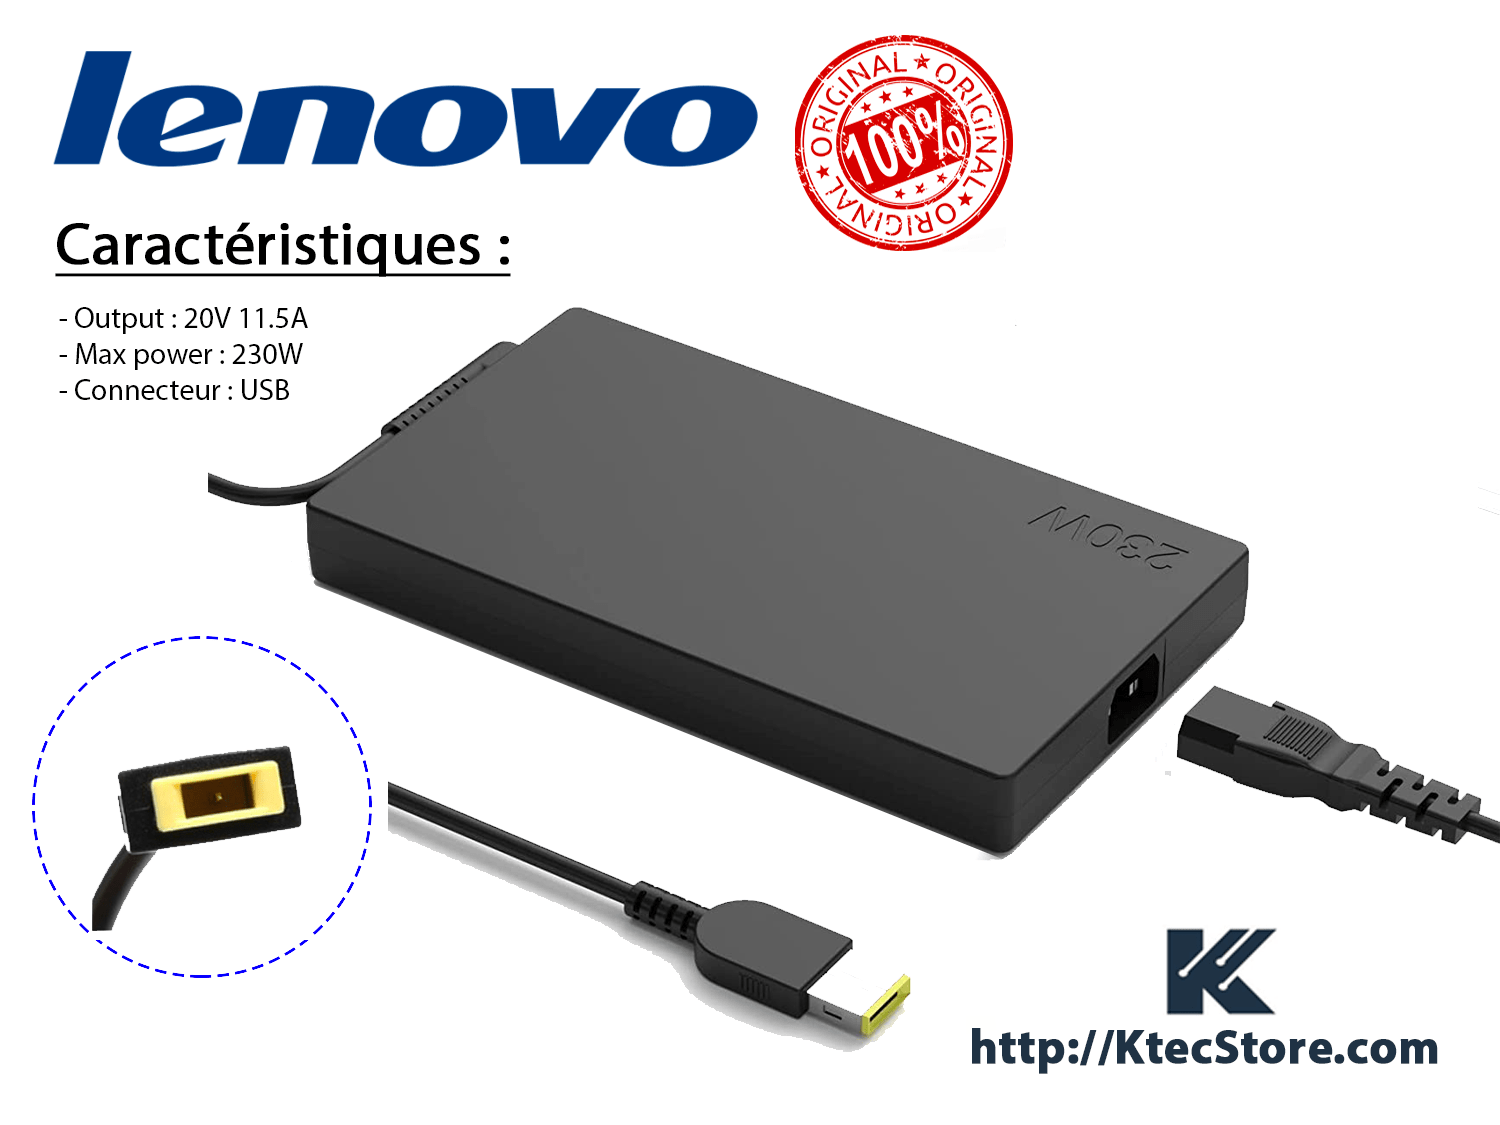 Chargeur LENOVO 230W ORIGINAL 20V / 11.5A Connecteur USB - KtecStore